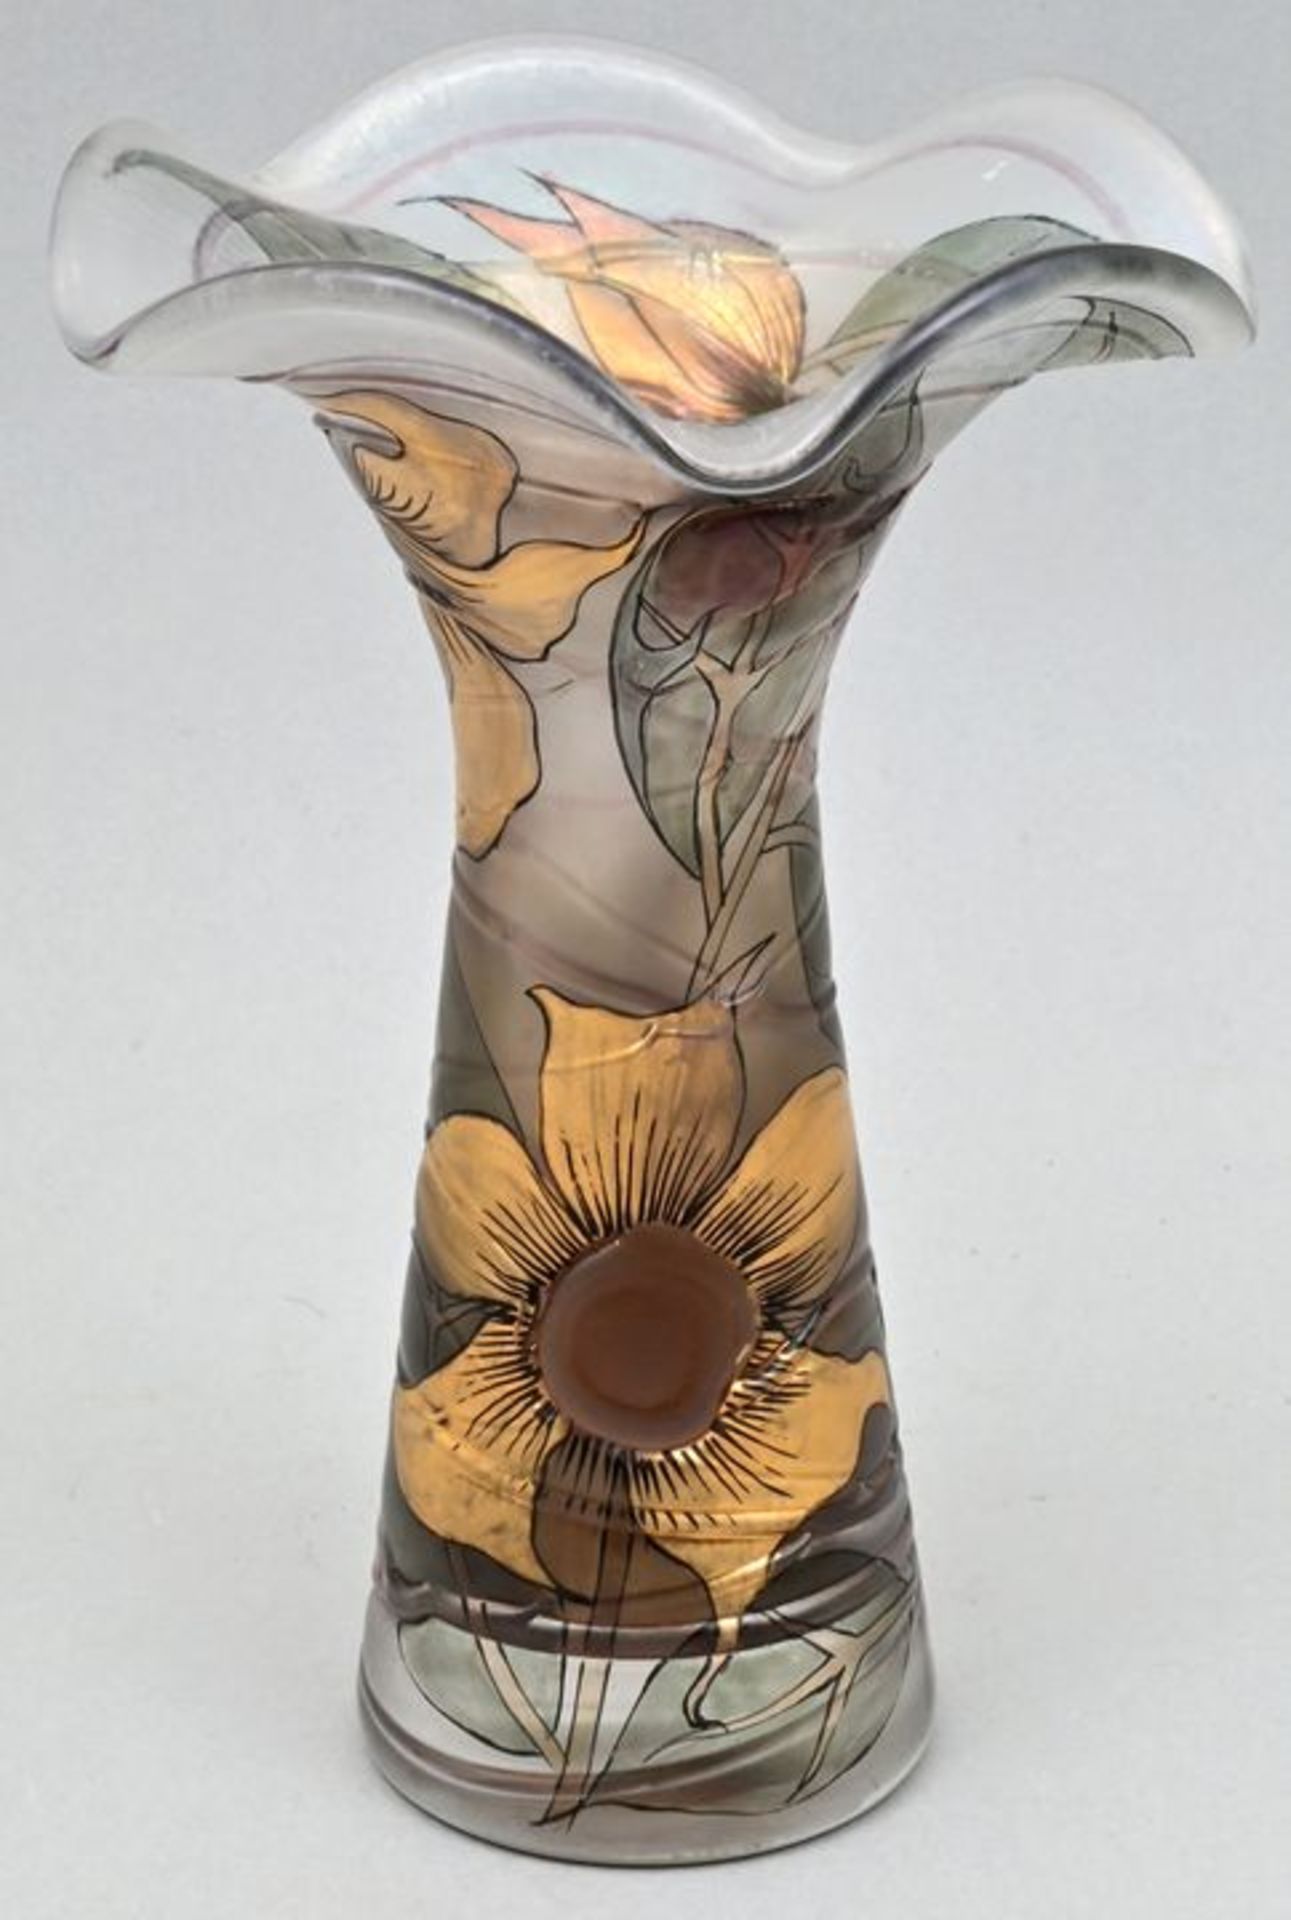 Vase im Jugendstil/ glass vase art nouveau style